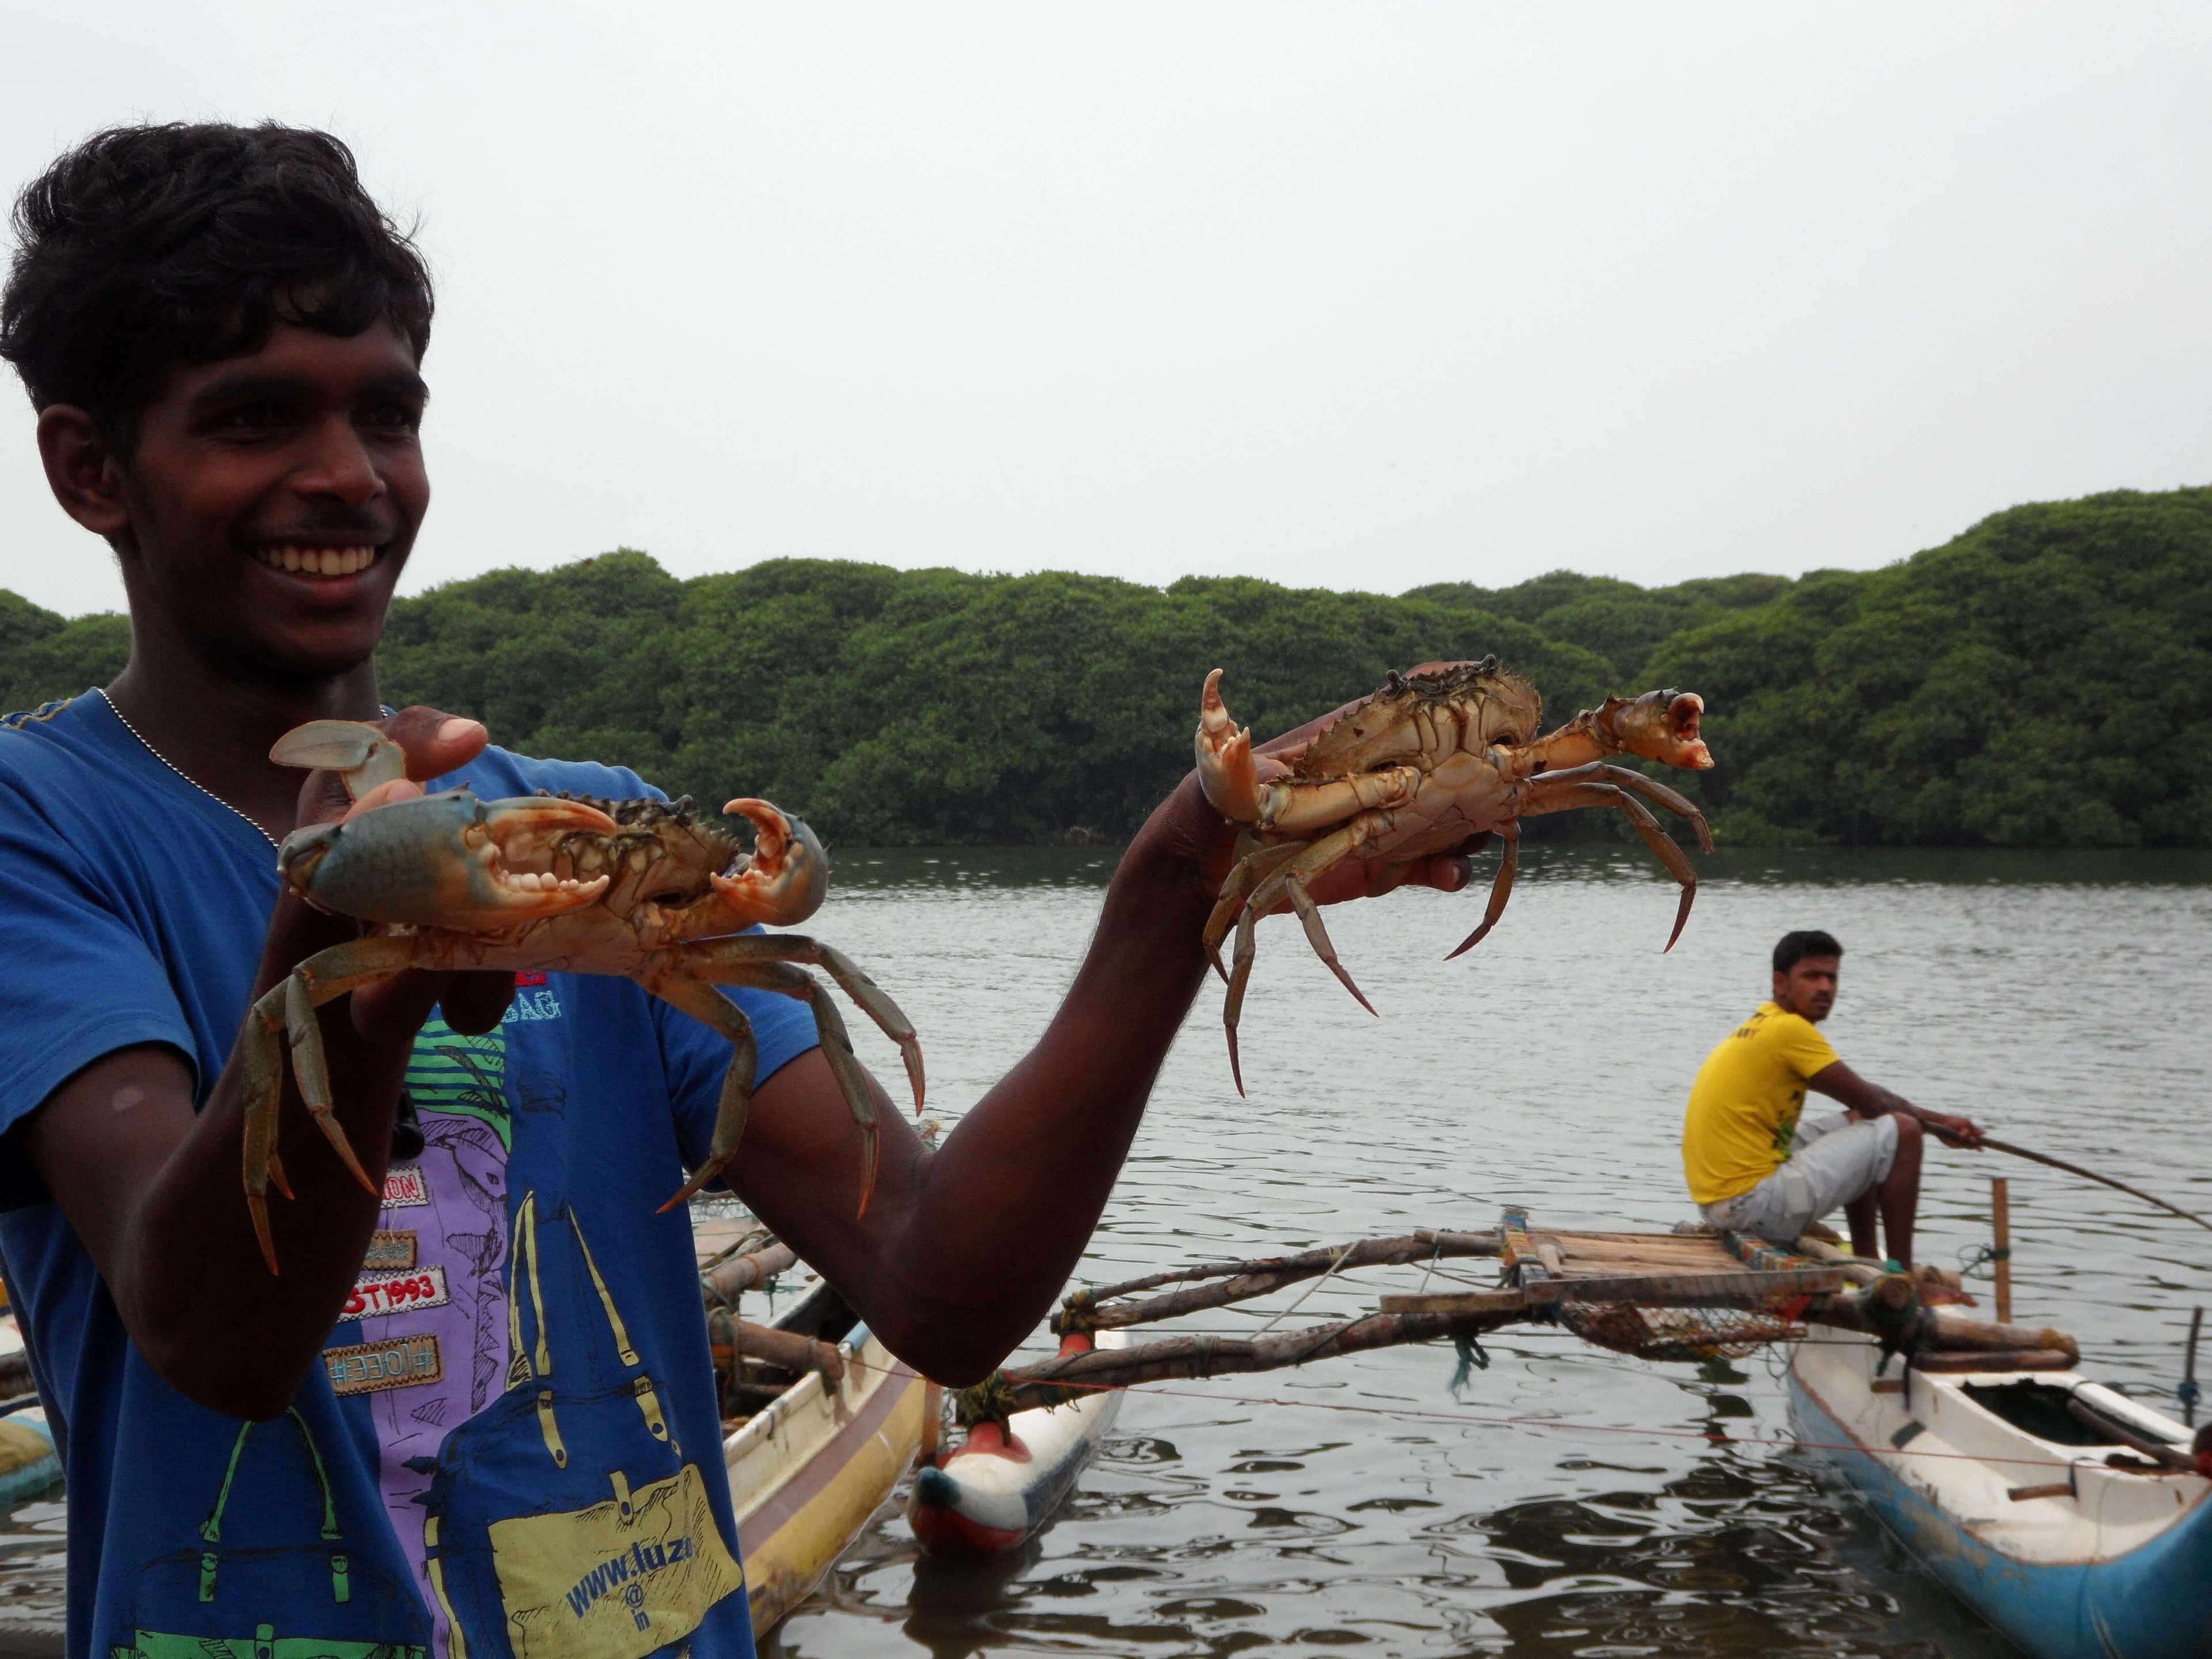 Una escena de captura de cangrejos en el río Negombo que ha difundido la diversidad